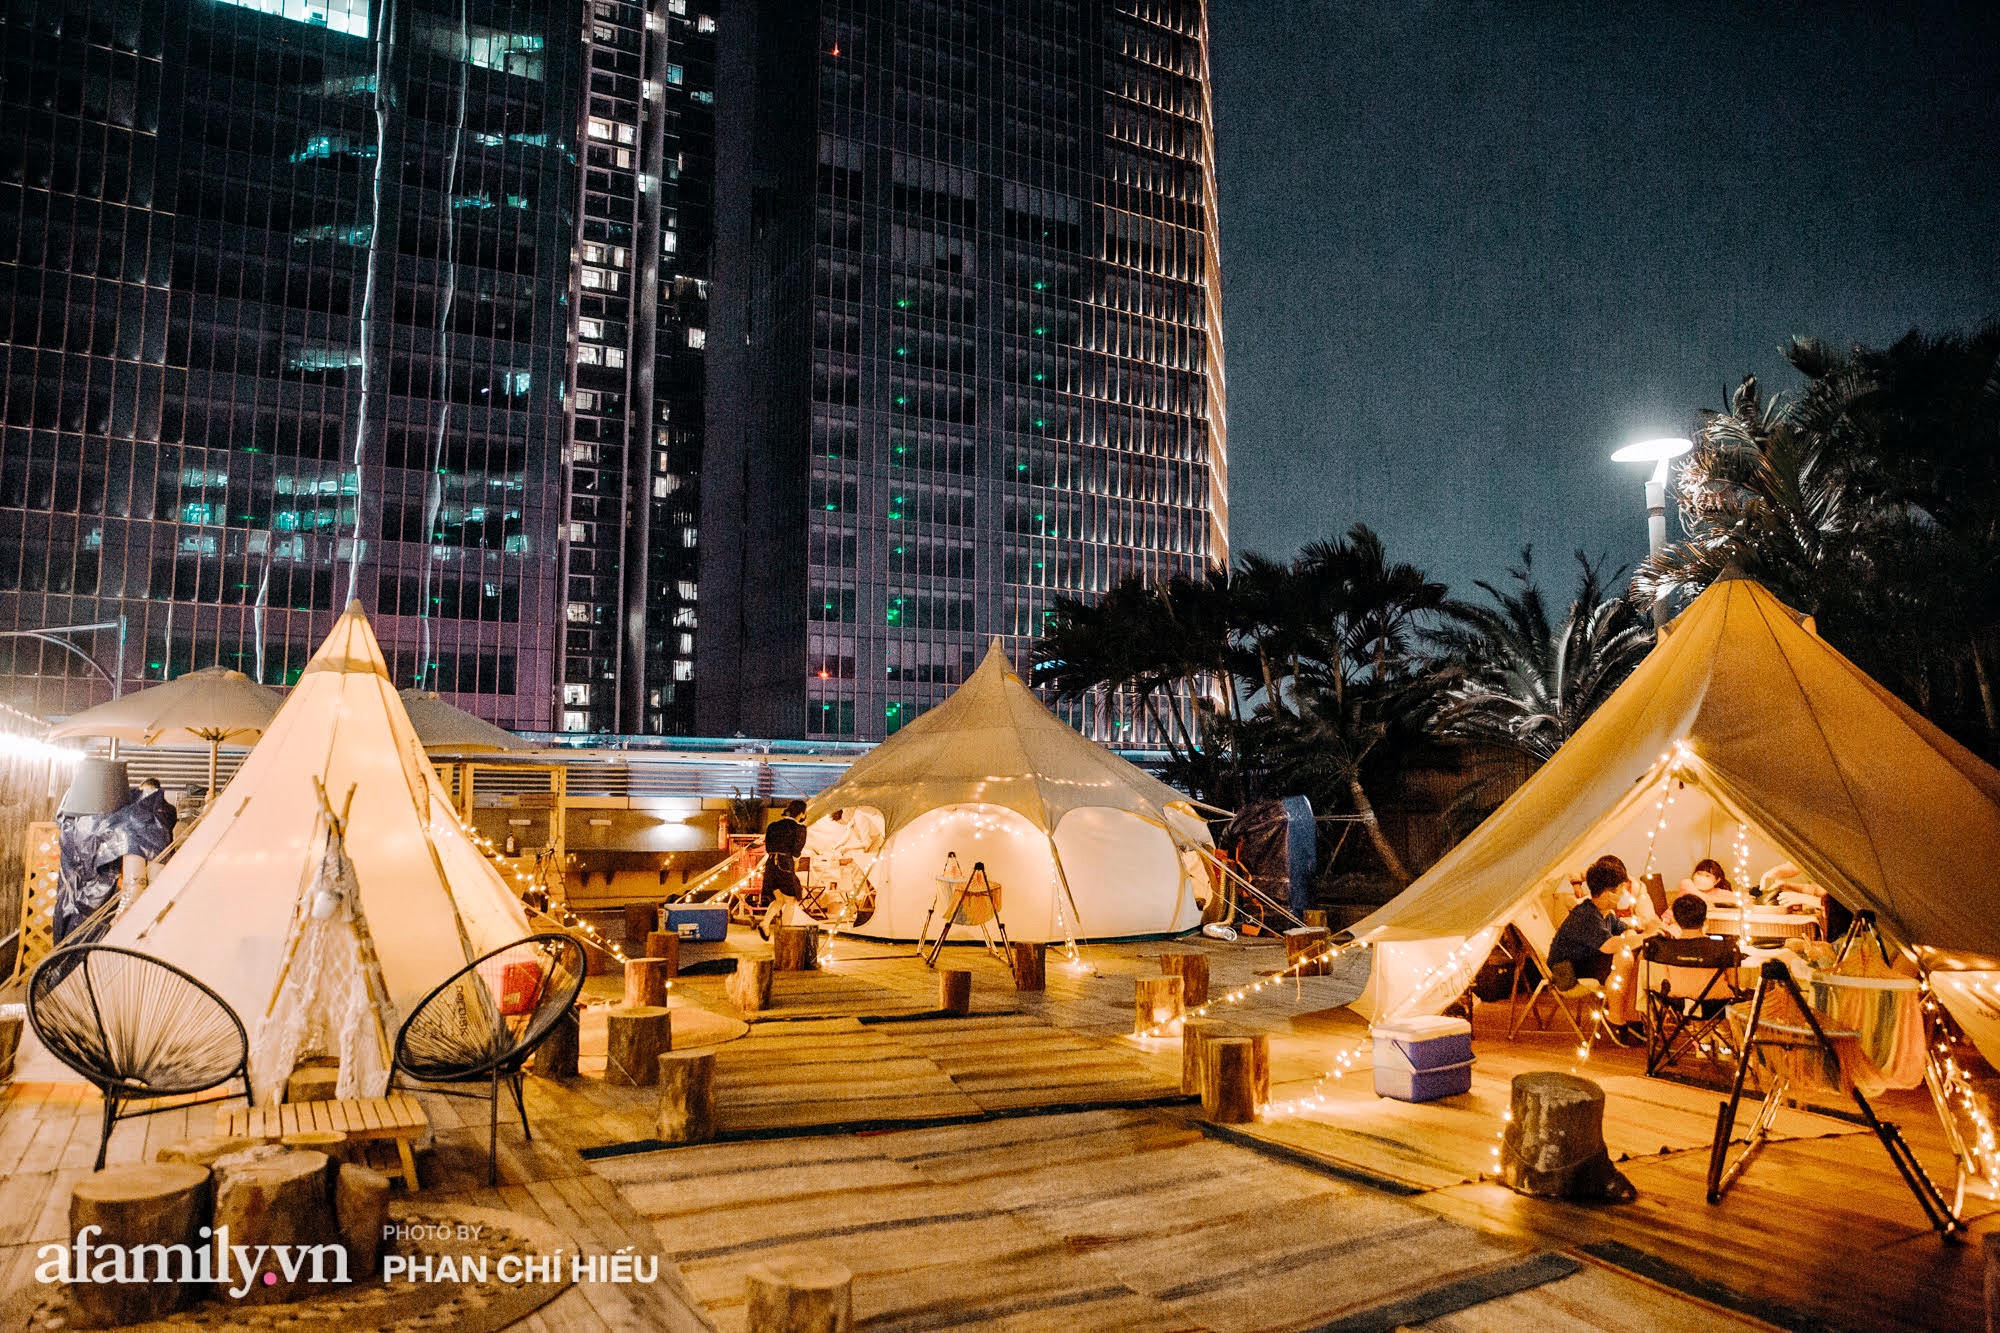 Siêu Hot: Glamping - Cắm trại xa xỉ trên nóc tòa nhà cao nhất Hà Nội, một khung cảnh 